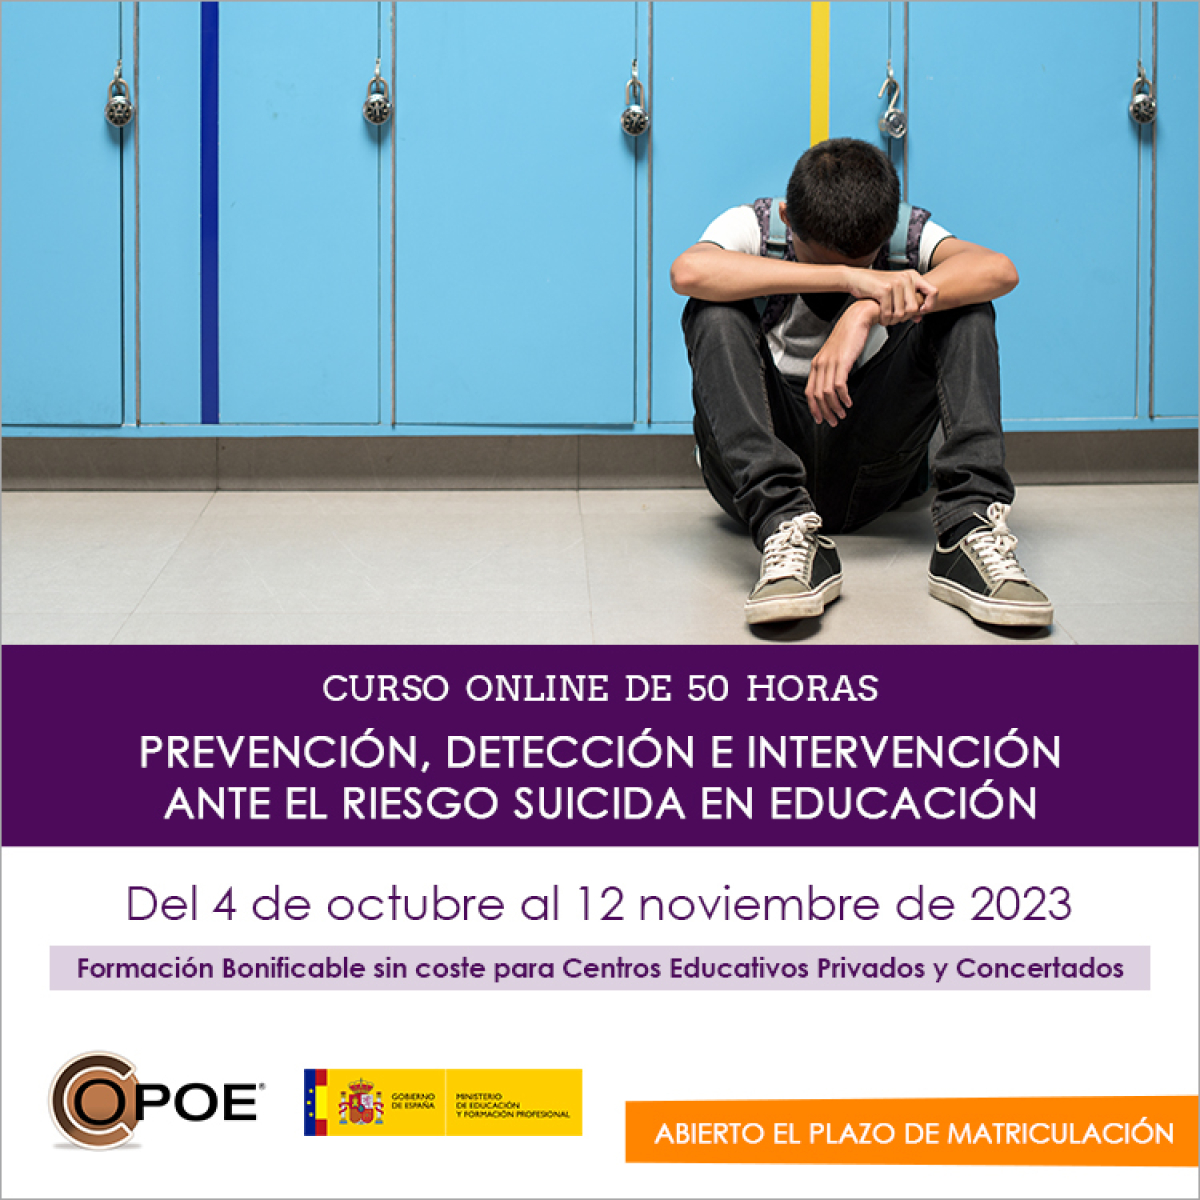 Curso online de COPOE &quot;Prevención, detección e intervención ante el riesgo suicida en educación”, del 5 de octubre al 9 noviembre de 2022